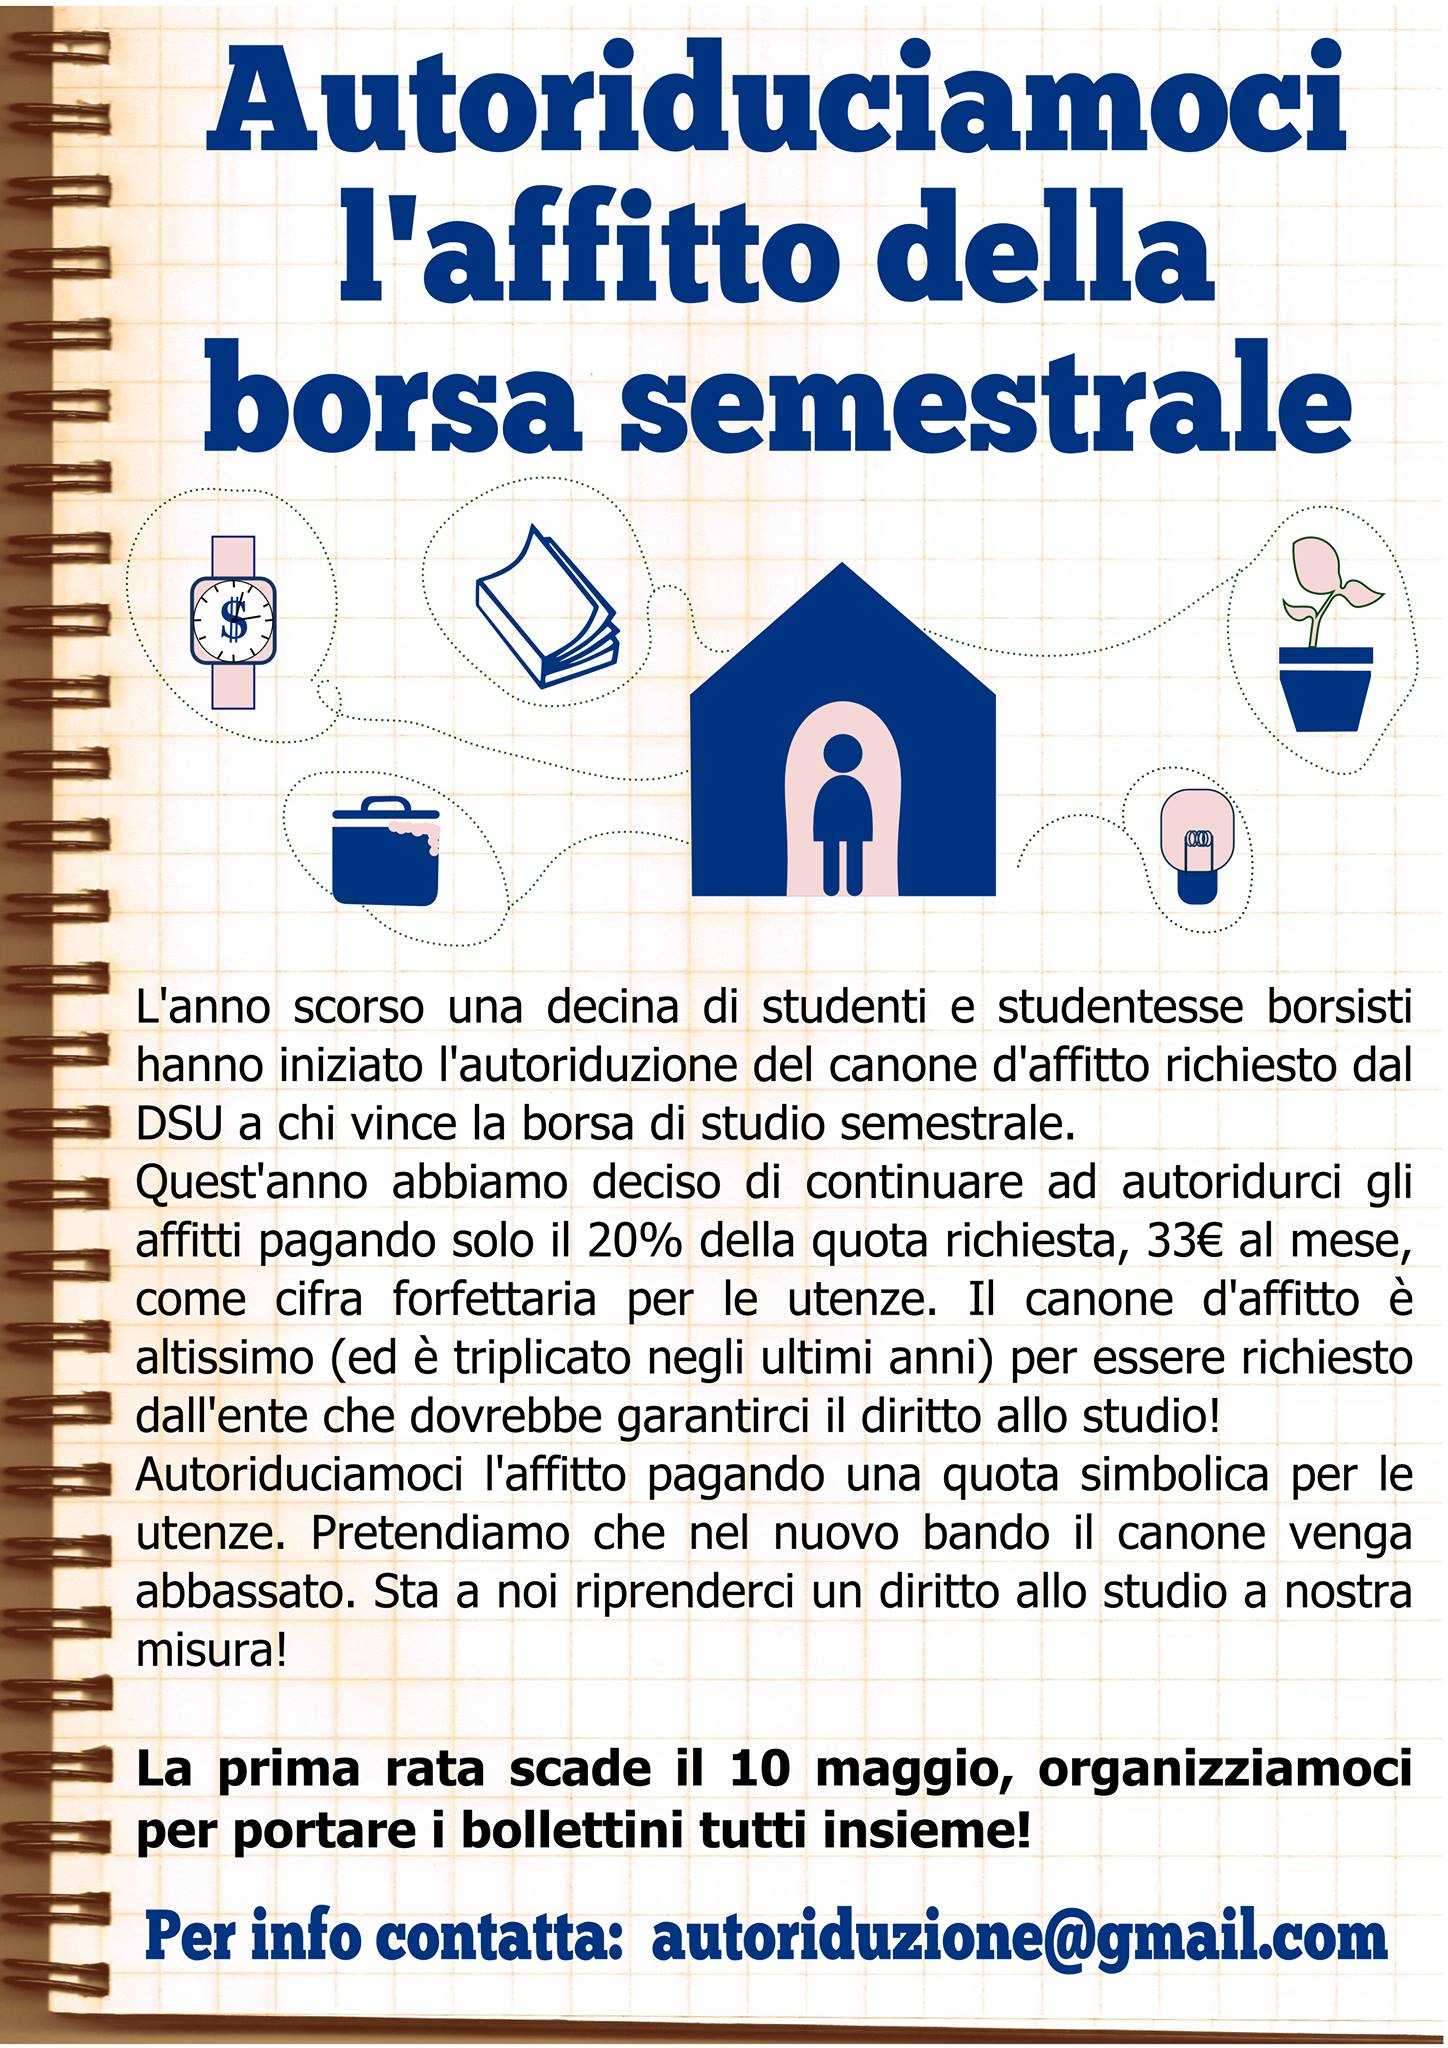 Pisa. Diritto allo Studio: campagna di autoriduzione dell'affitto semestrale in casa dello studente.